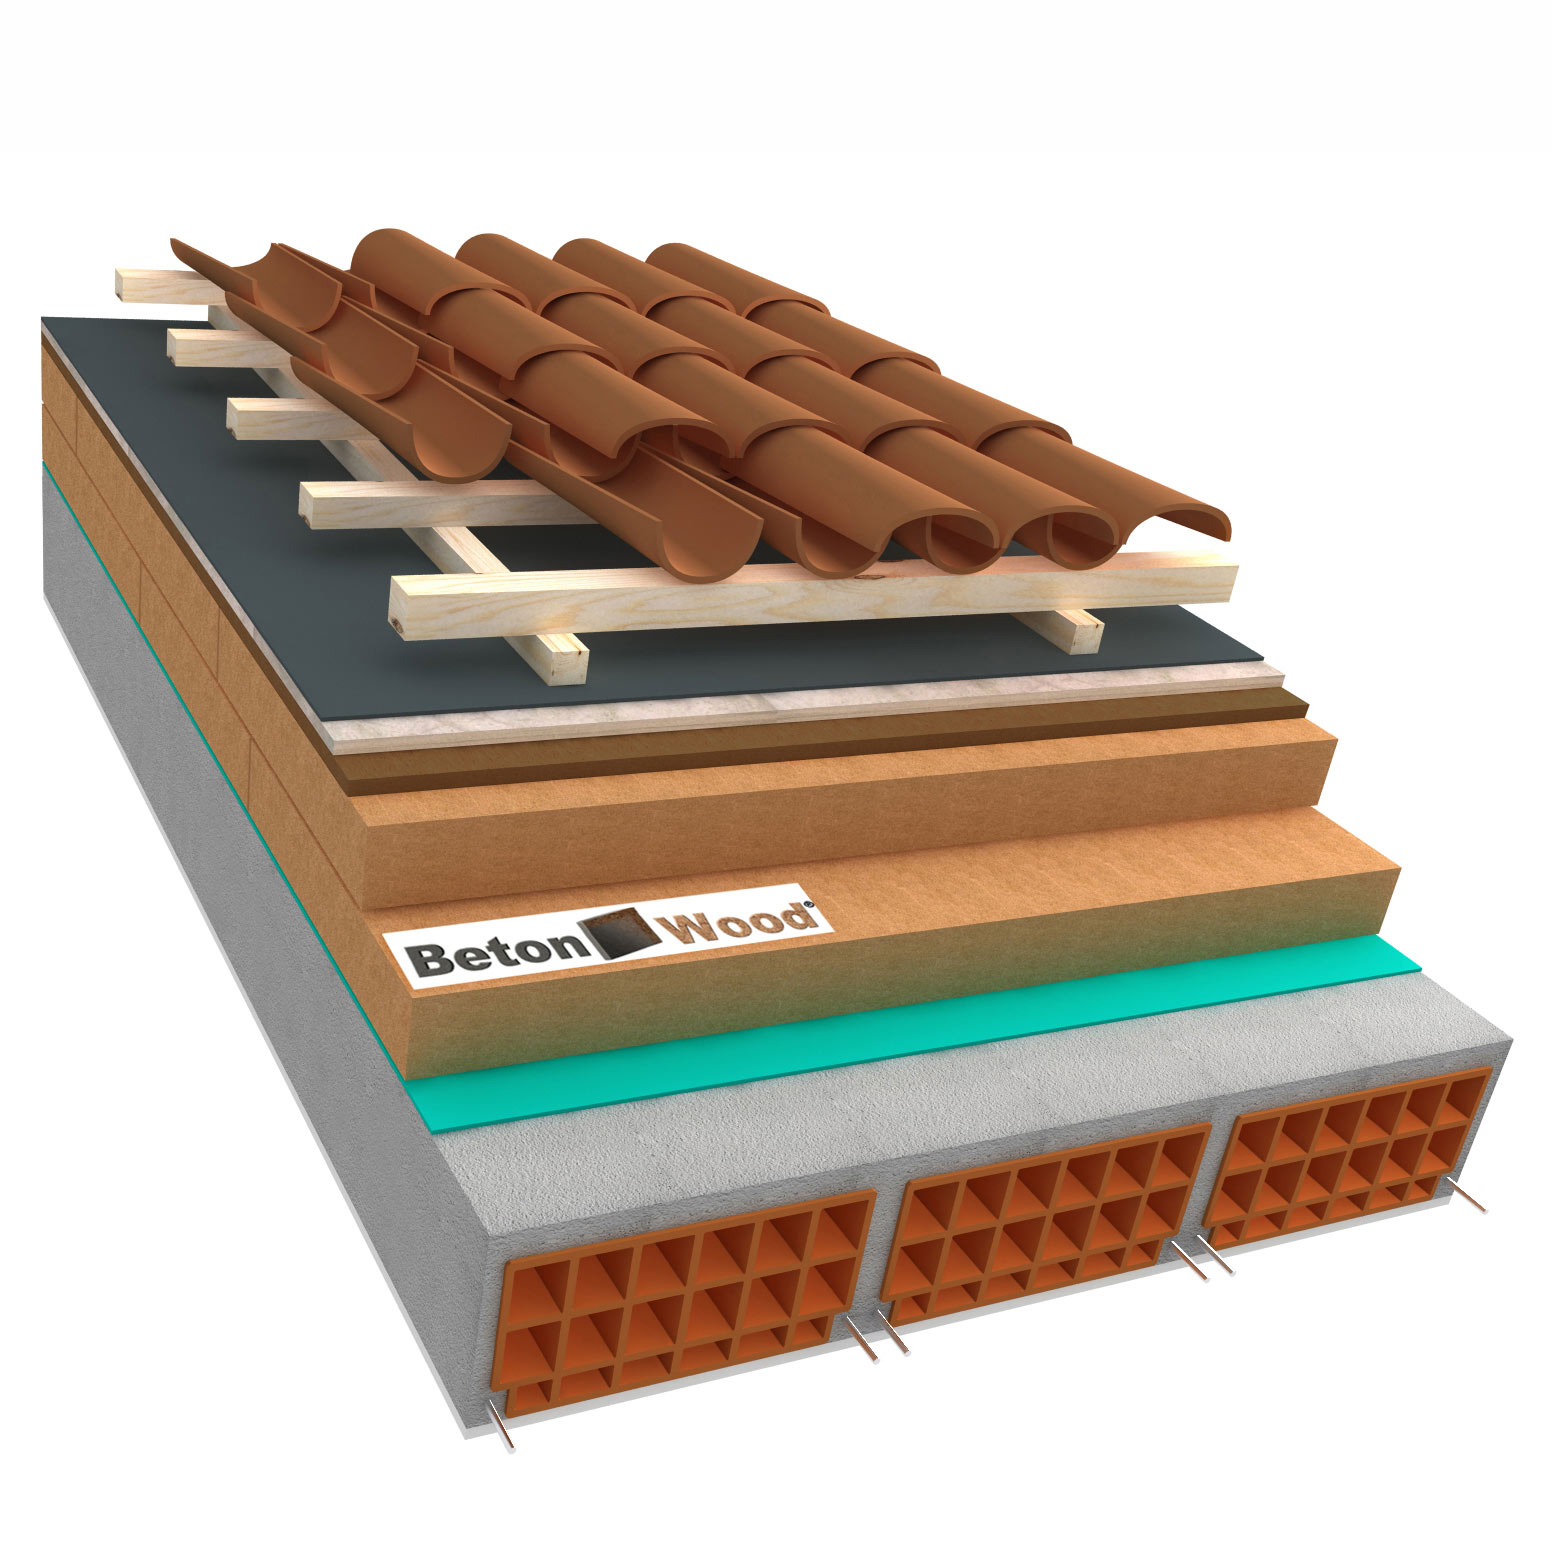 Sistema tetto D fibra di legno Therm, Bitumfiber e cementolegno